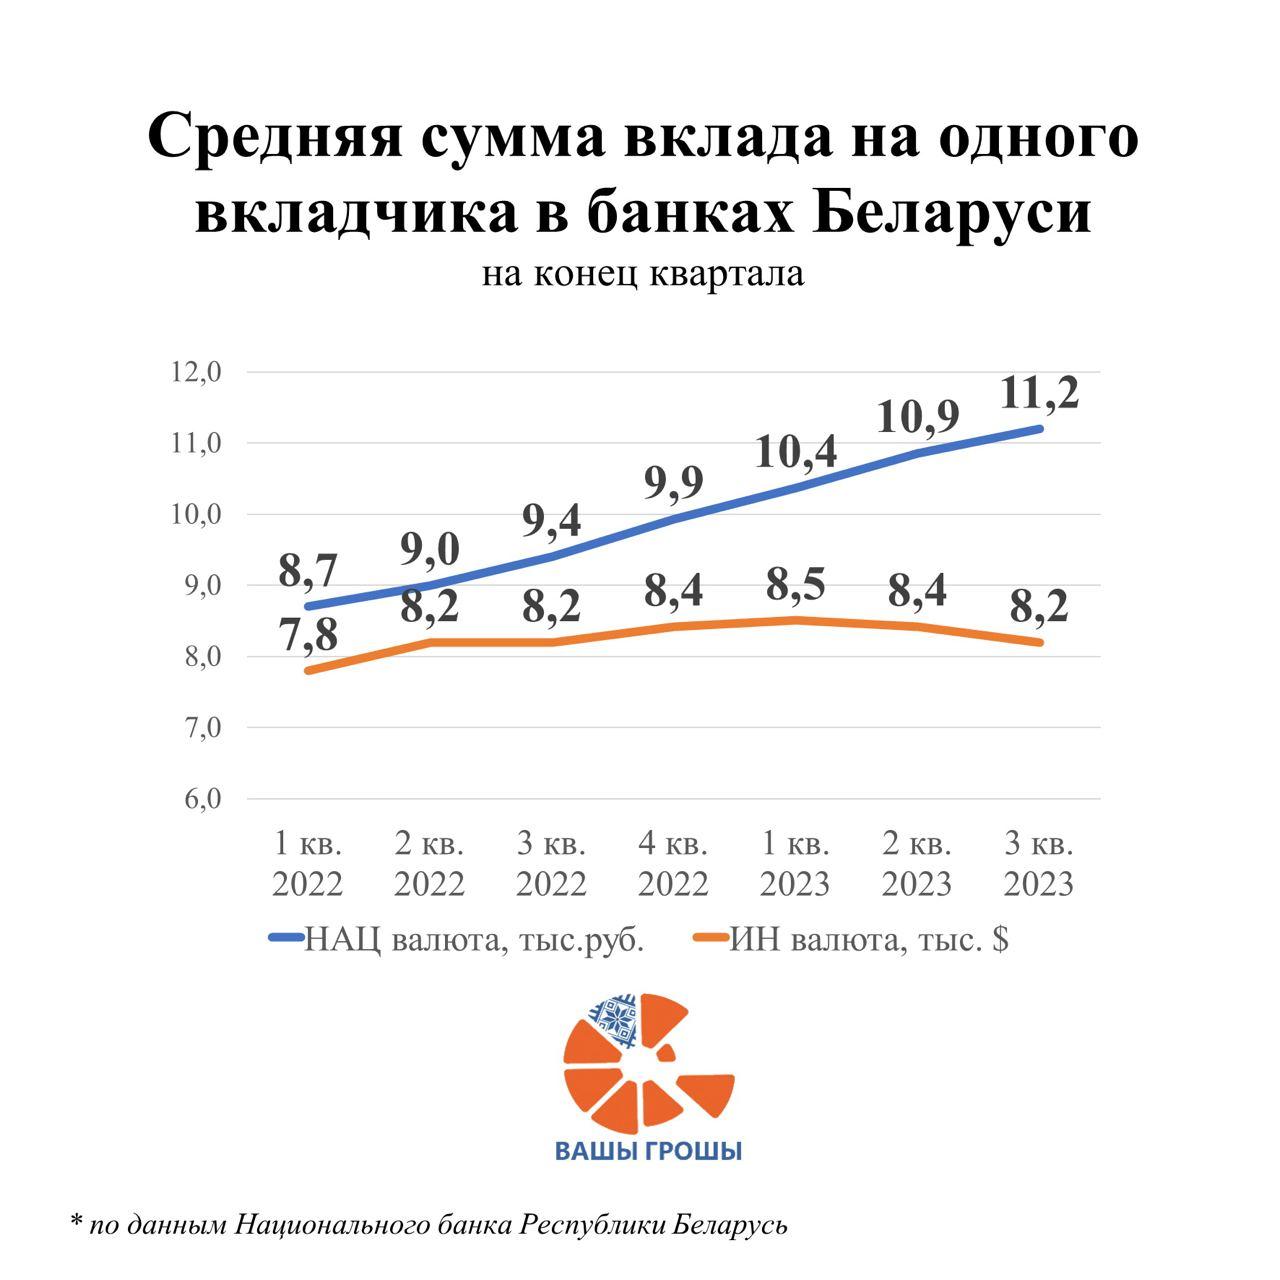 Валютные депозиты населения Беларуси продолжают снижаться